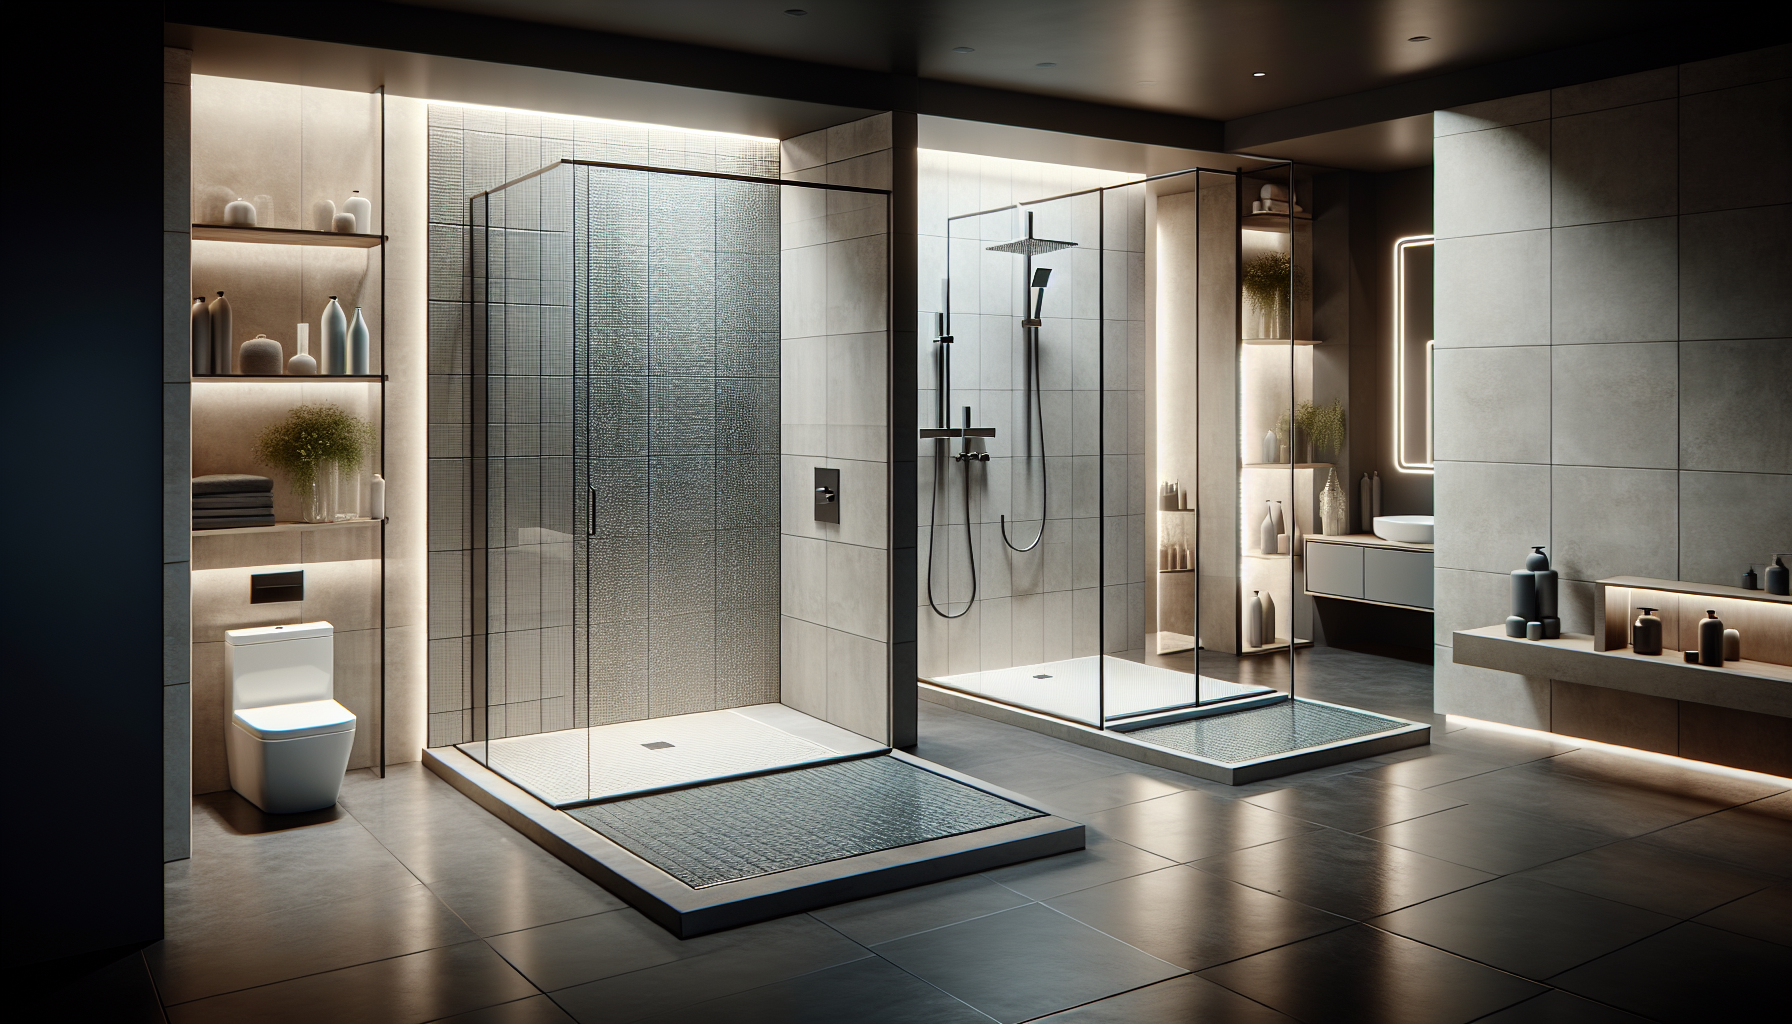 Verschiedene Arten von begehbaren Duschen werden vorgestellt, einschließlich Duschwannen, gefliesten Duschen und bodengleichen Duschen mit Duschrinnen.